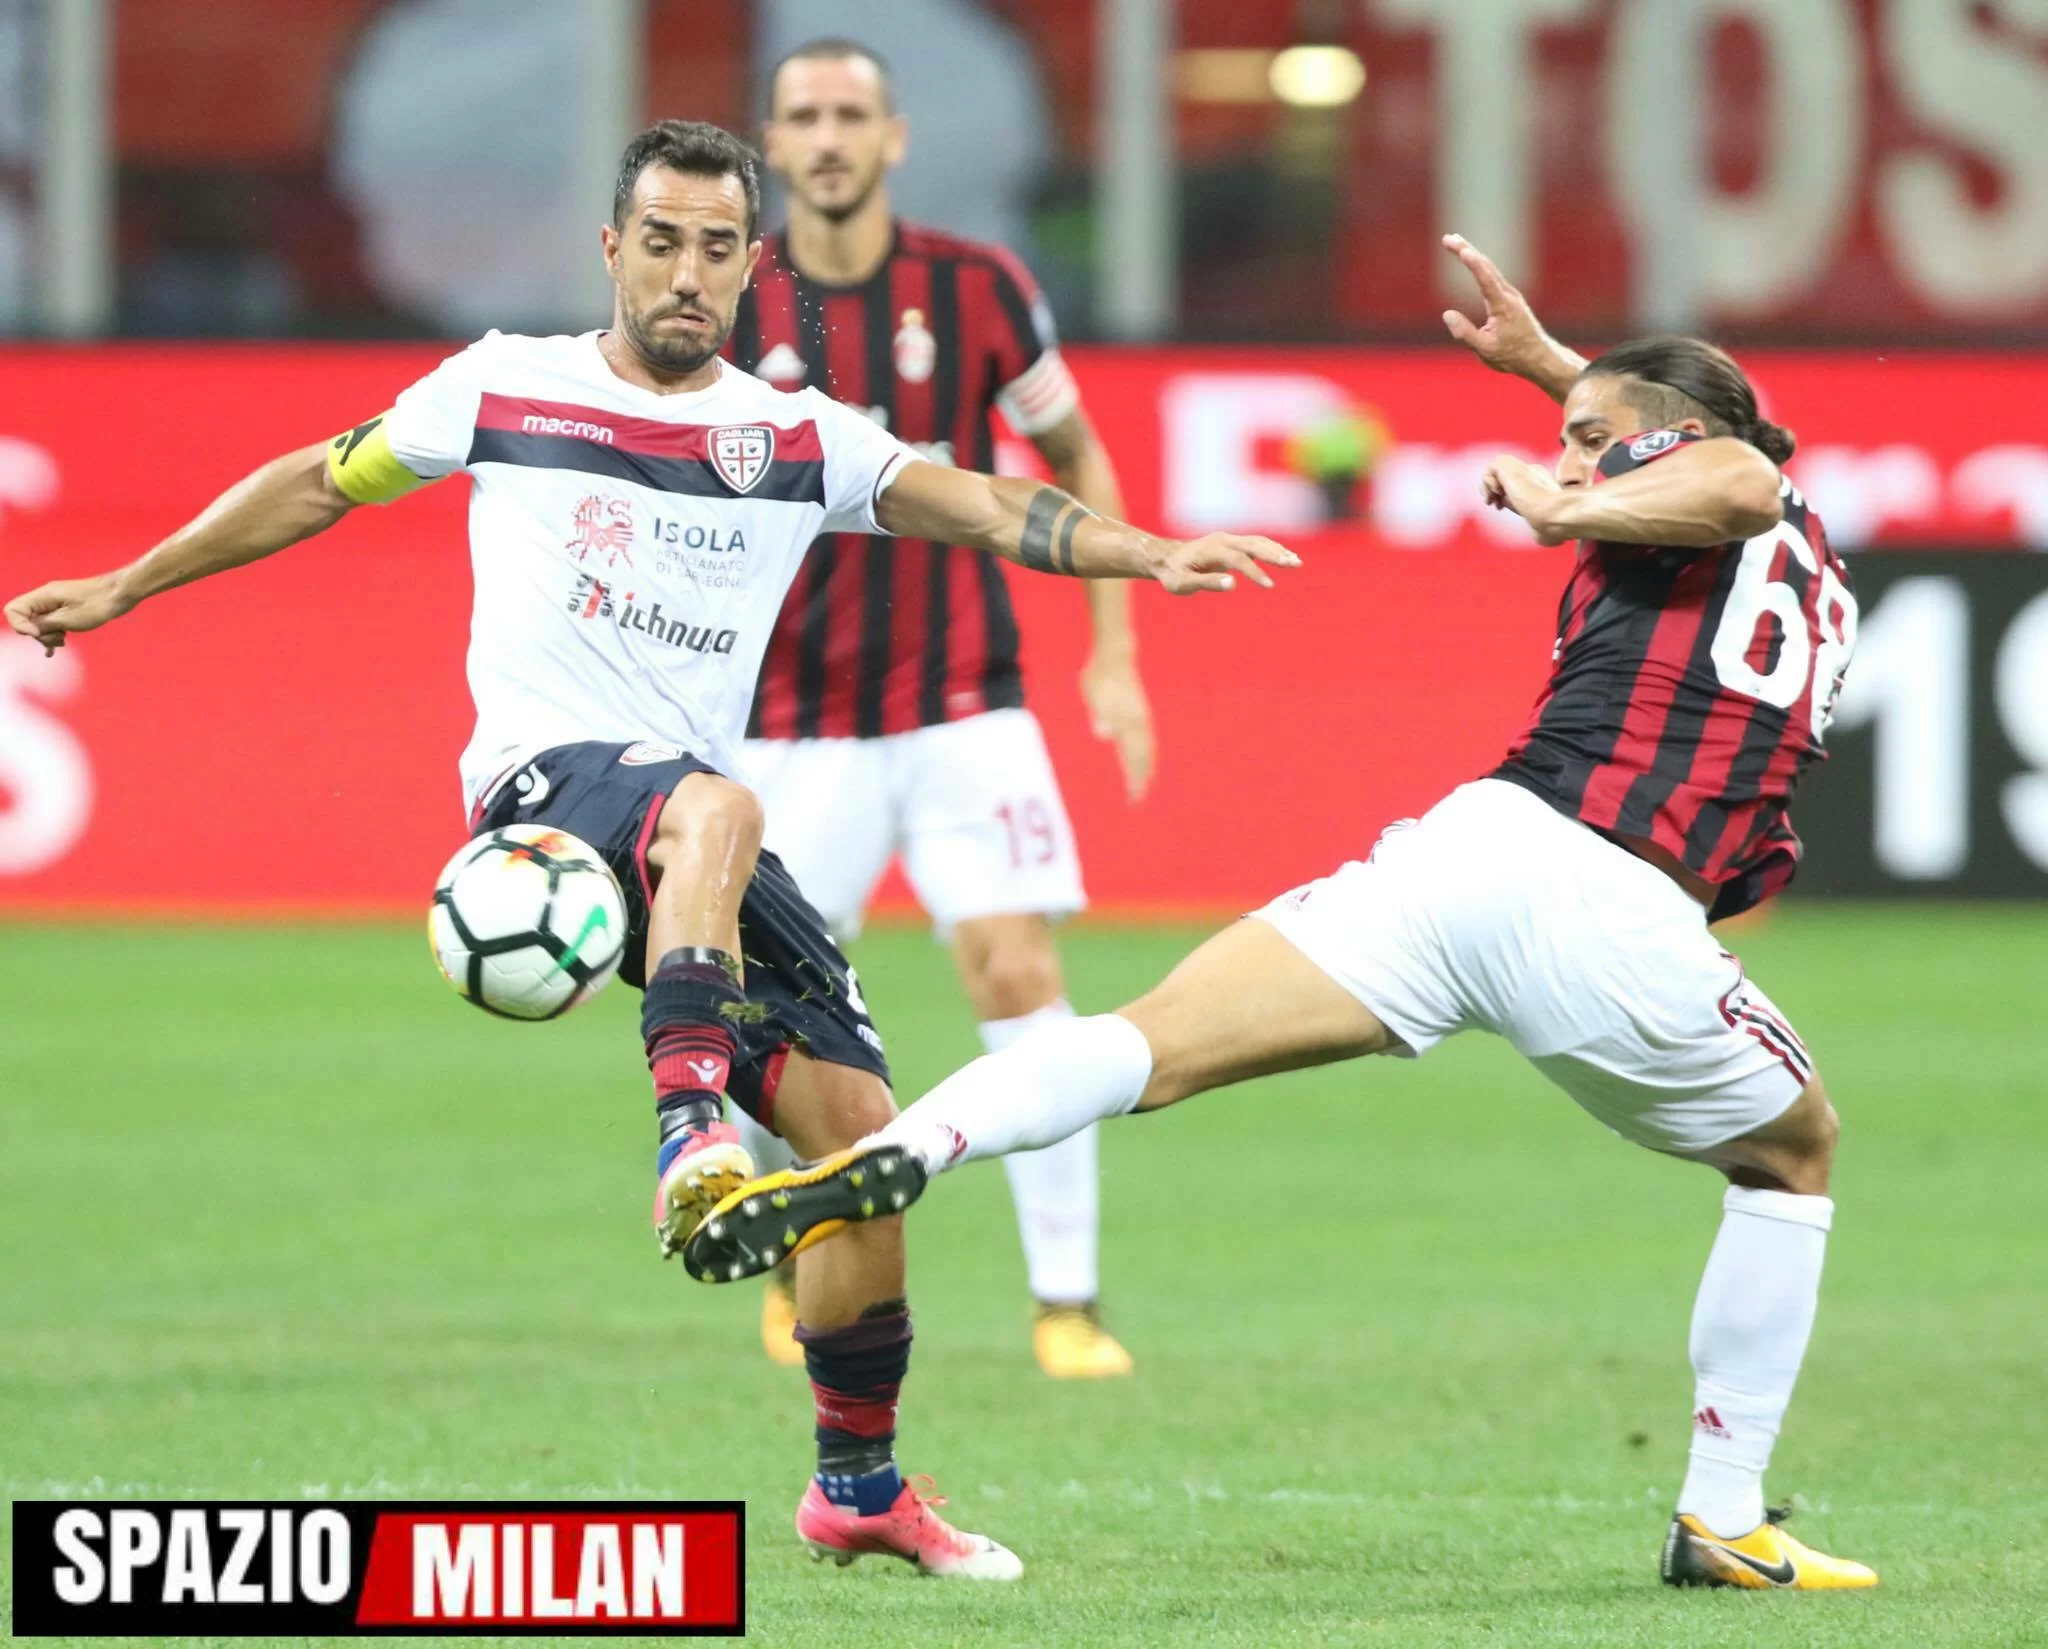 Sau a Milan TV: “Sarà una gara difficile ma sappiamo come mettere in difficoltà il Milan”